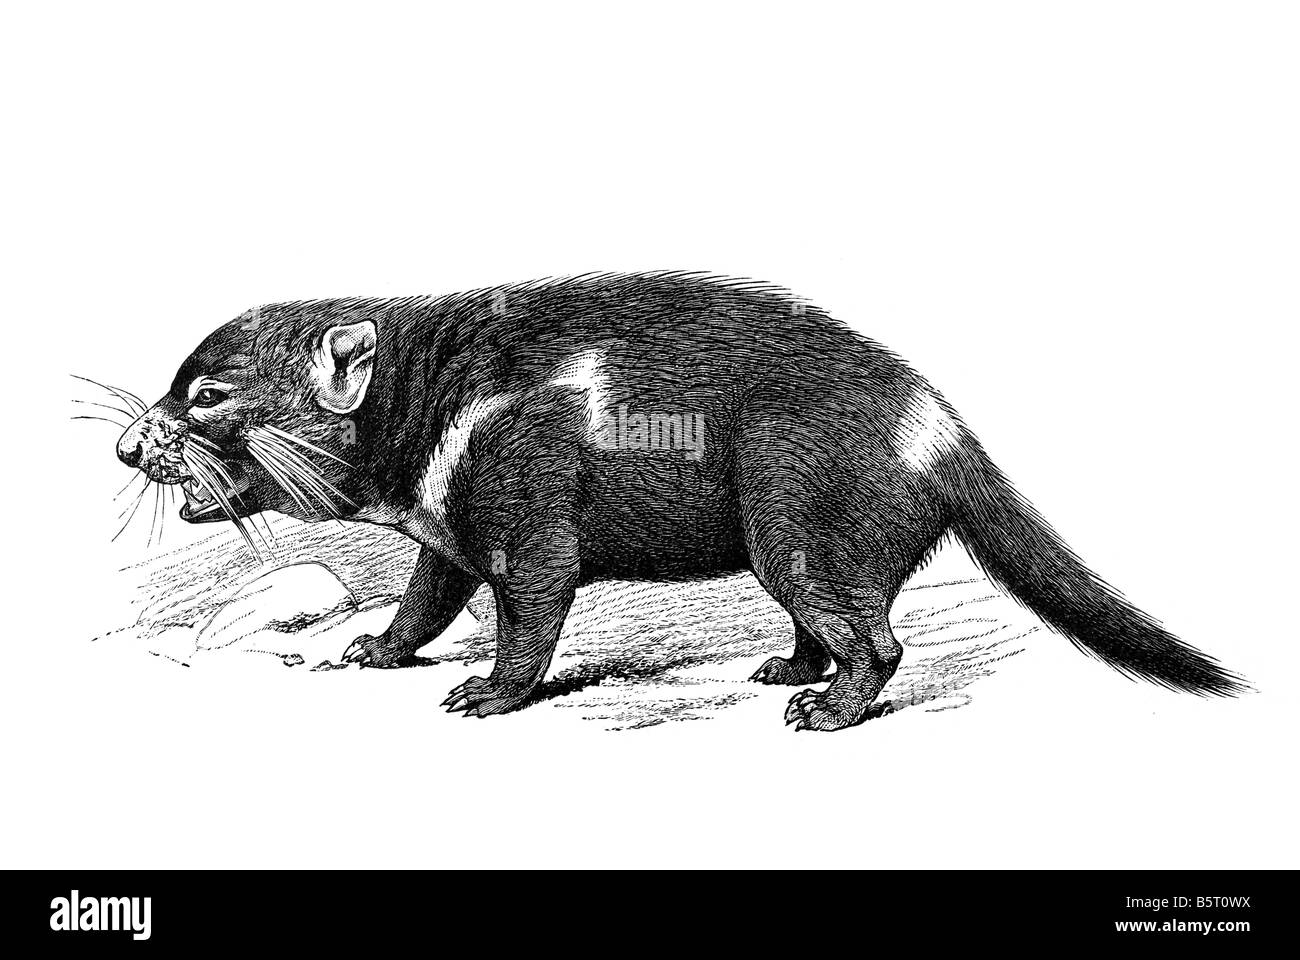 Diable de Tasmanie Sarcophilus harrisii le diable marsupial carnivore Banque D'Images